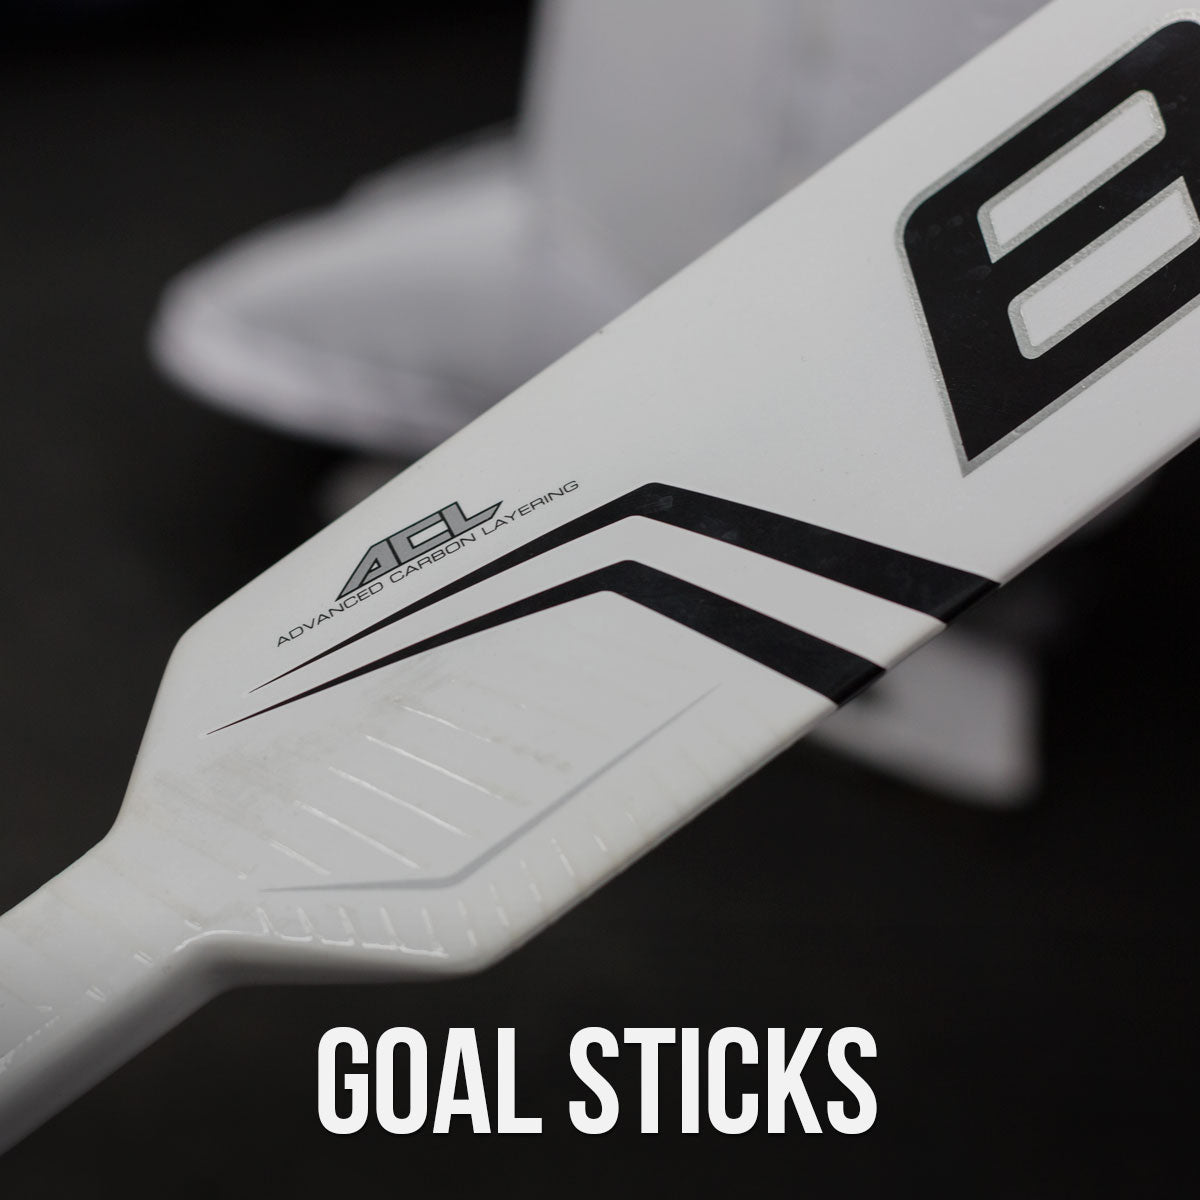 Bauer goal sticks